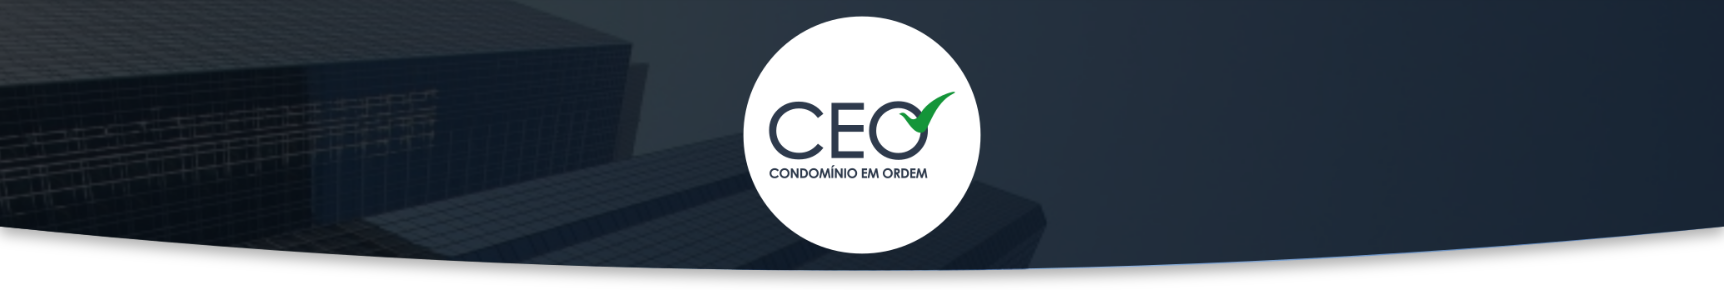 eBook CEO - Gestão de Reformas